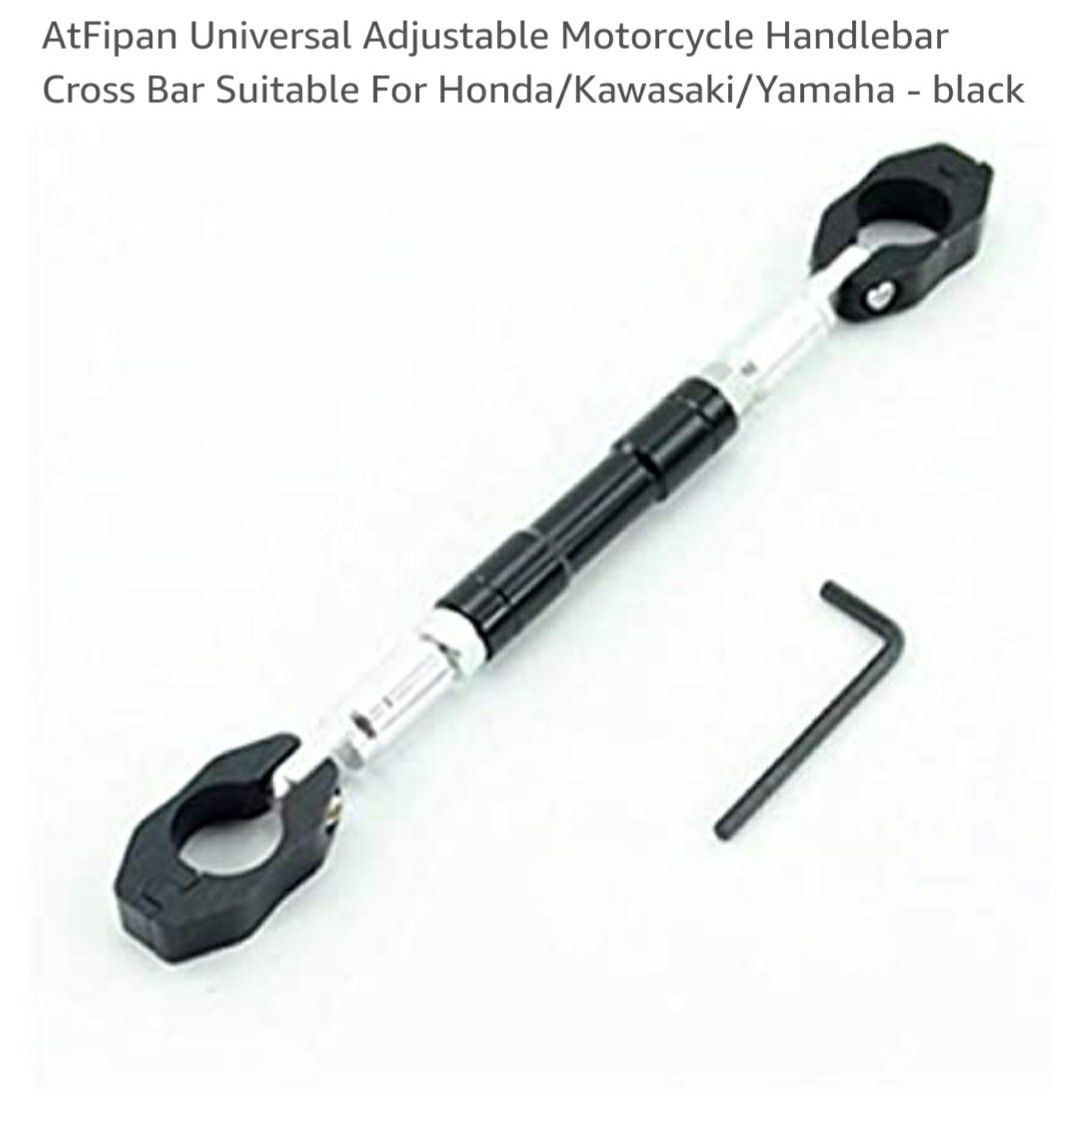 Universal Adjustable Motorcycle Handlebar Cross Bar Suitable For Honda/Kawasaki/Yamaha - black